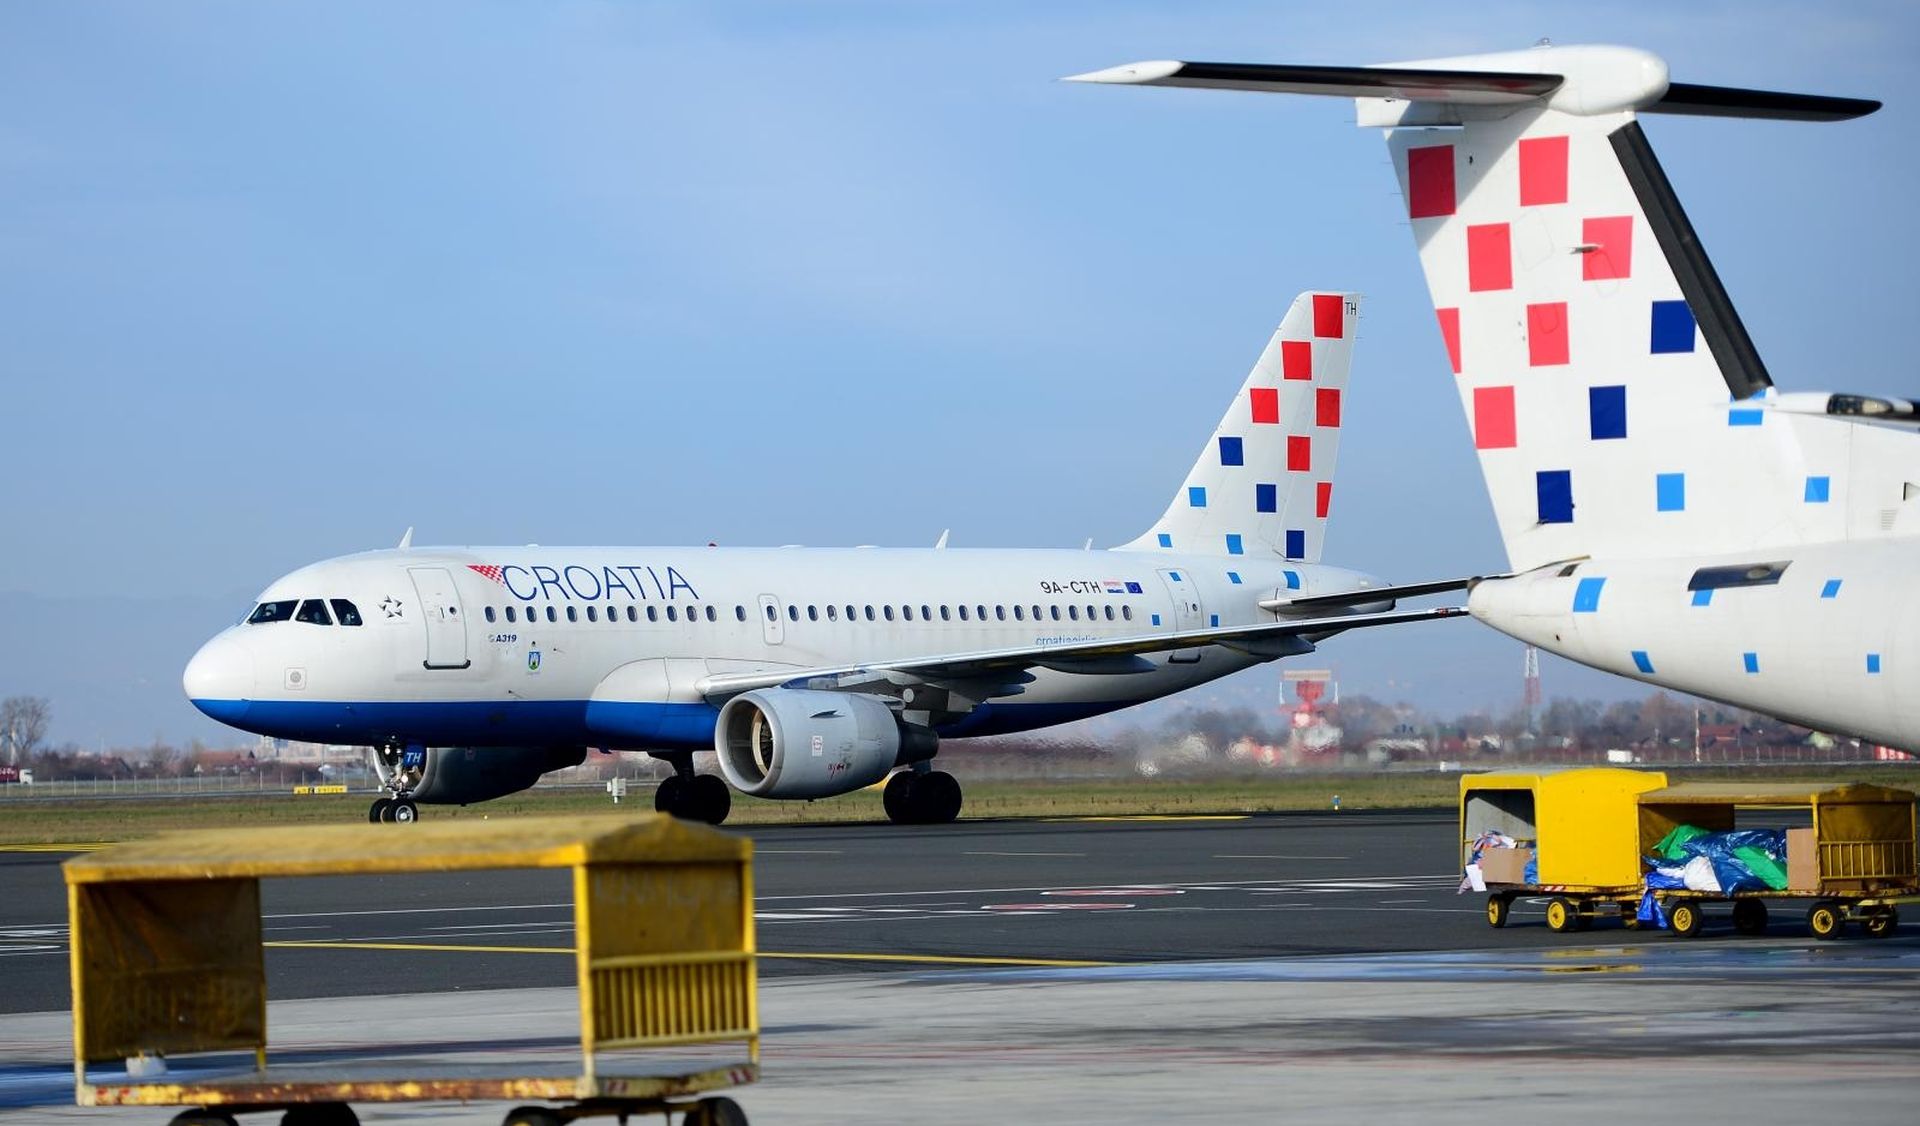 05.12.2017., Zagreb - Putnicki terminal Zracne luke Franjo Tudjman. 
Zrakoplov kompanije Croatia Airlines. 
Photo: Marko Prpic/PIXSELL